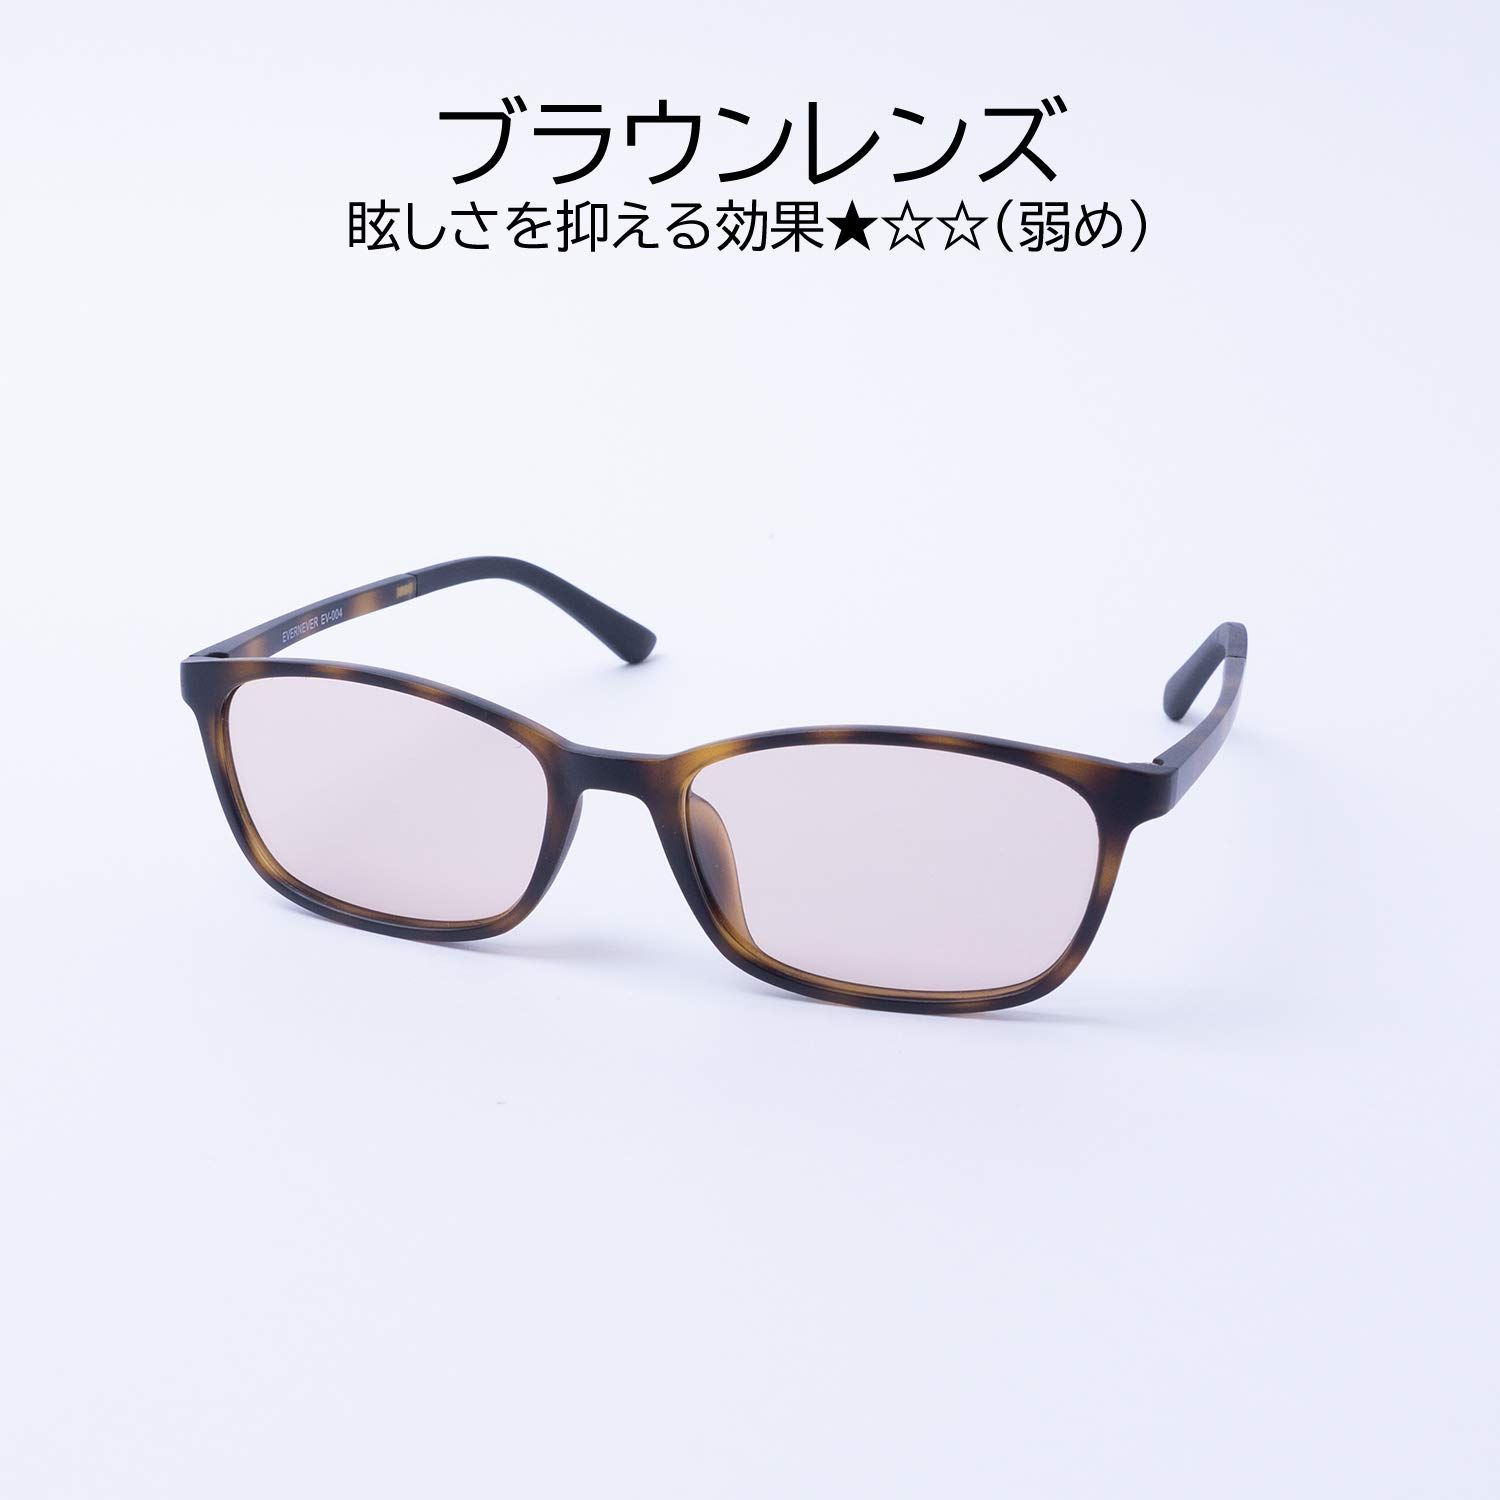 EVERNEVER レンズカラーで選ぶサングラスやや小さめ～ふつうサイズ や ...